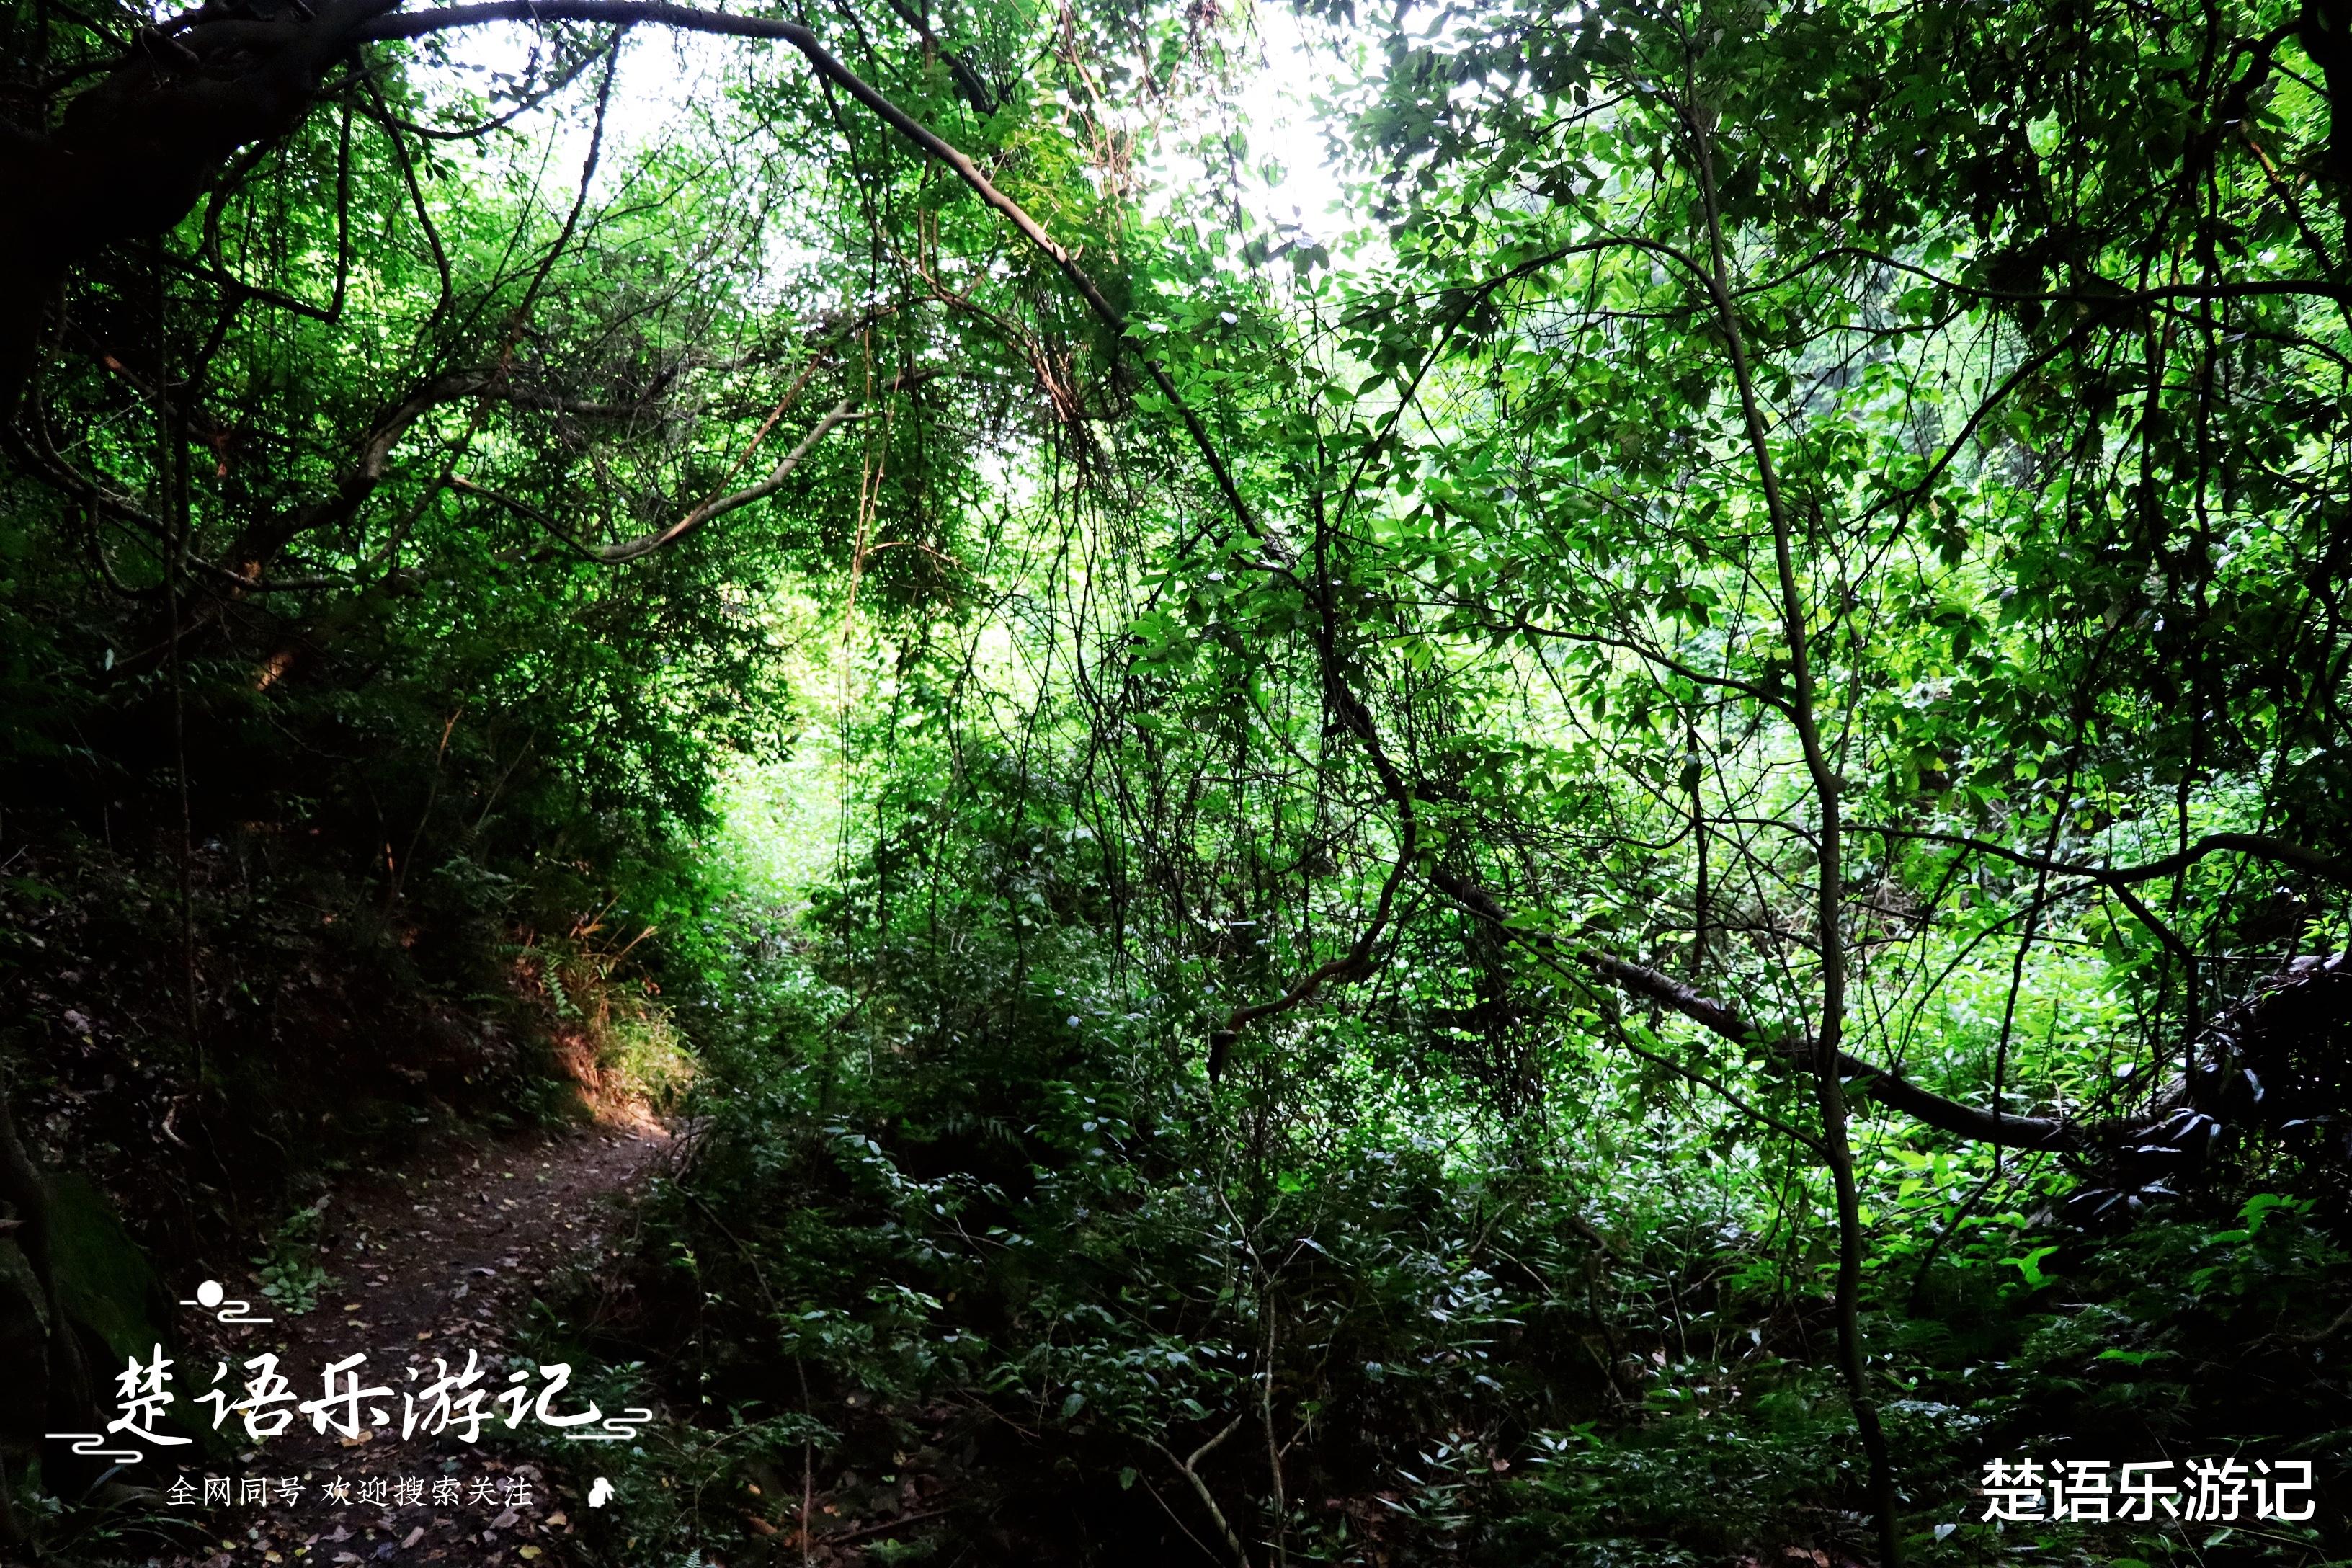 宁波|宁波有条峡谷风景奇绝，滴水如琴声般清越，远胜杭州灵隐一线天